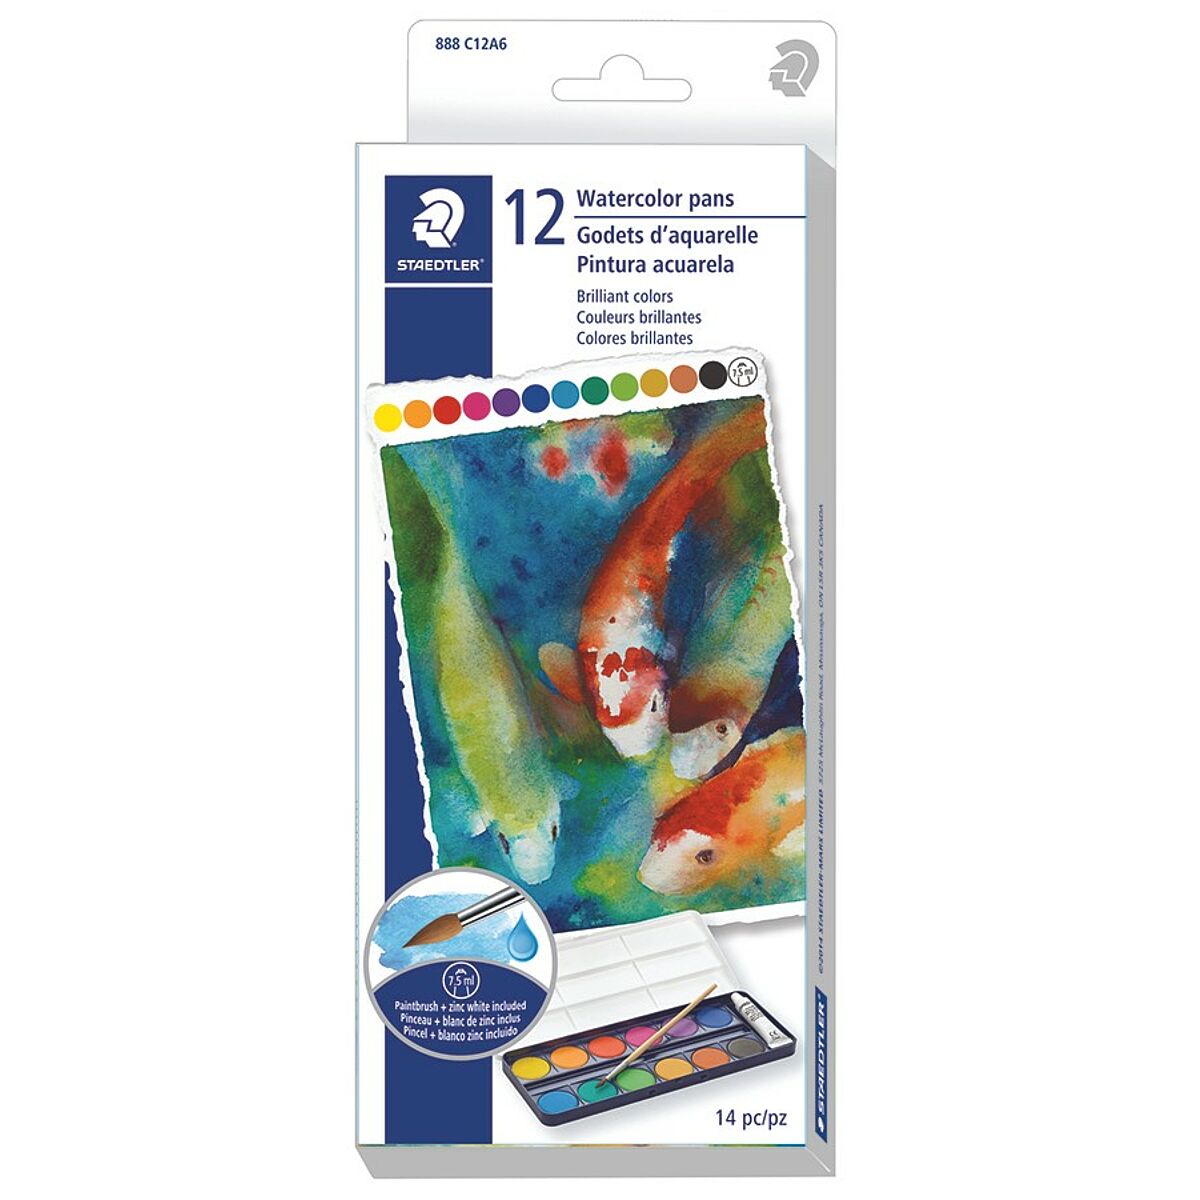 Staedtler - Boîte de peinture Noris 888 - 12 pastilles + 1 gouache blanche  + 1 pinceau - Service Achat Discount